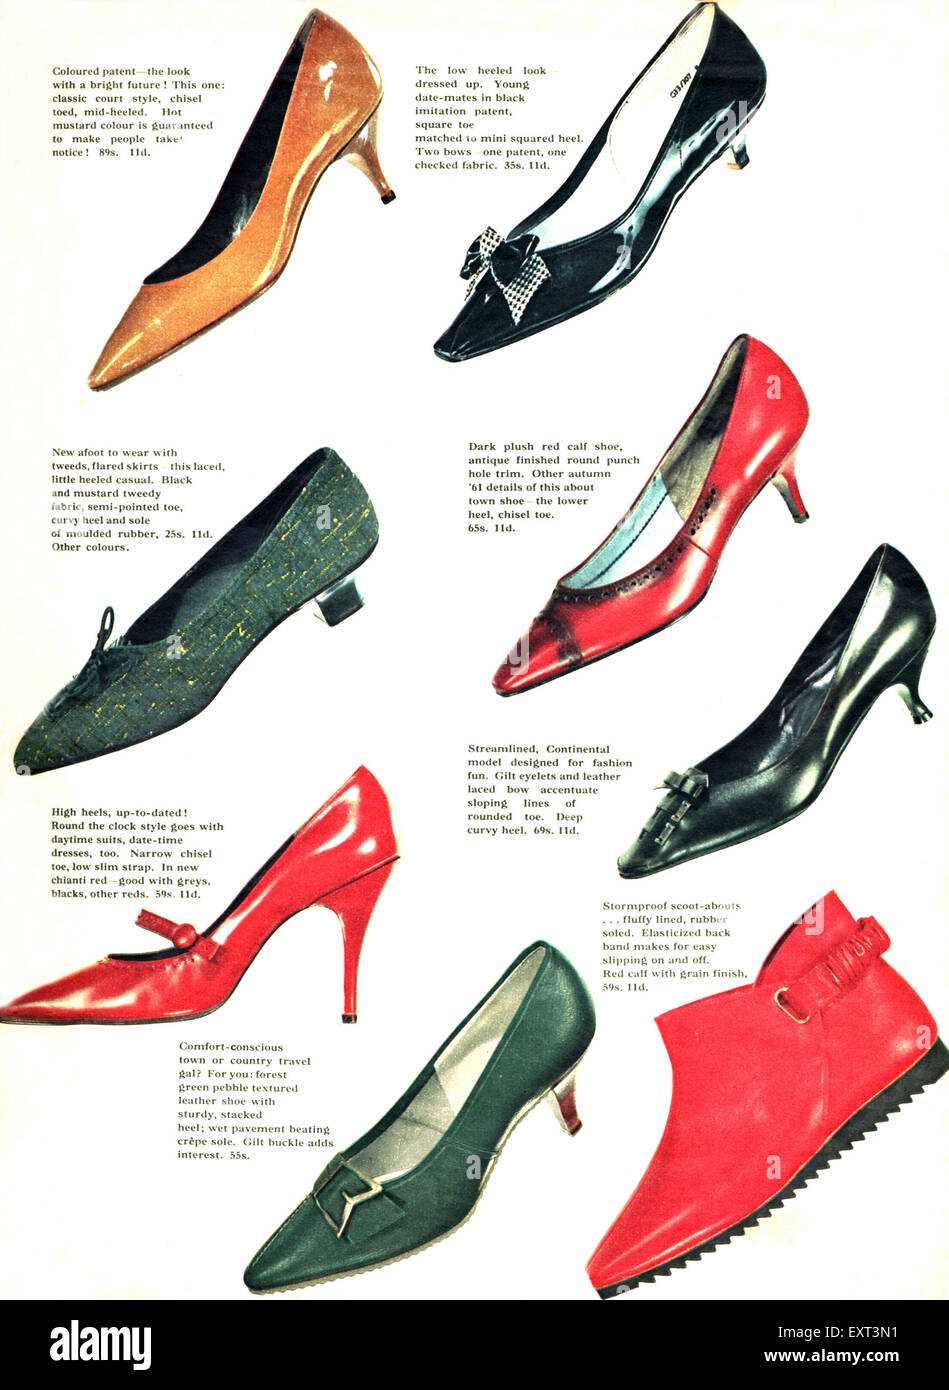 1960s shoes Banque de photographies et d'images à haute résolution - Alamy